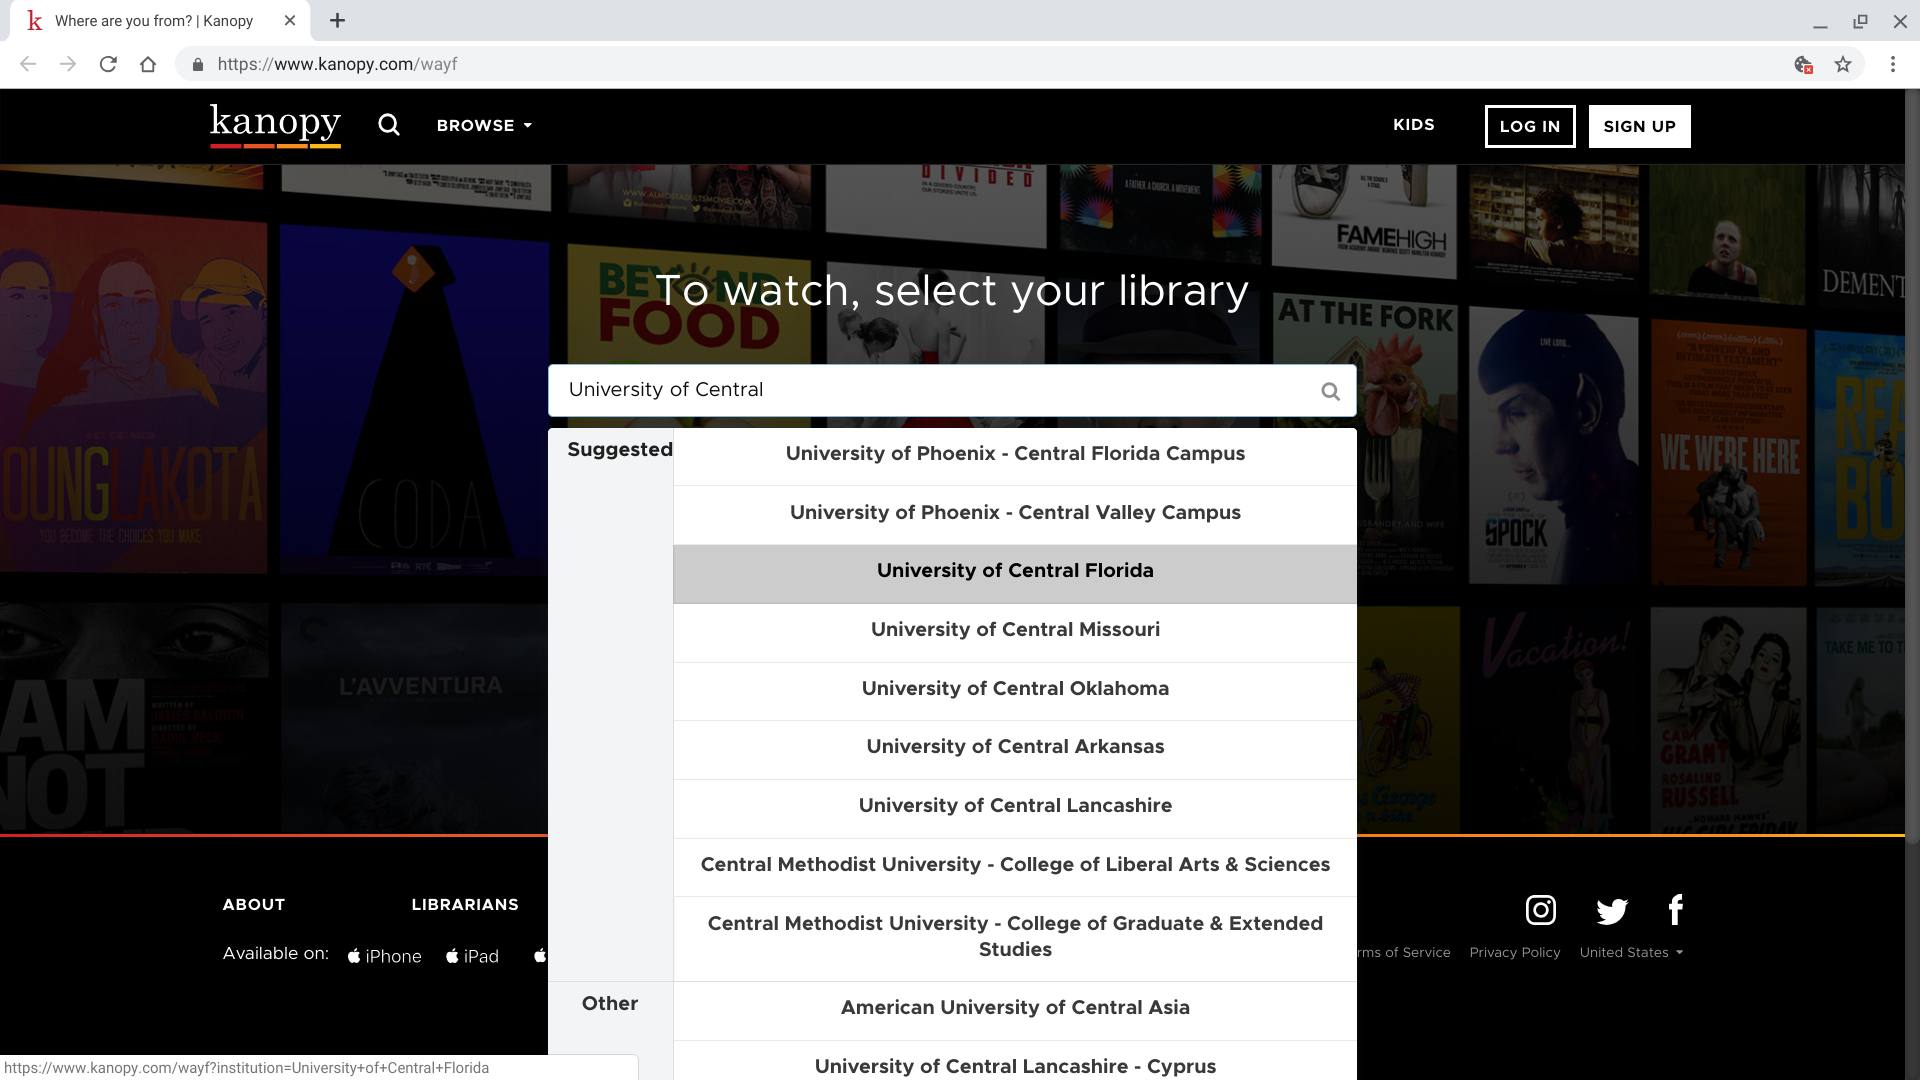 Screenshot van de bibliotheekzoekpagina van Kanopy.com, die een zoekopdracht toont naar "University of Central" met verschillende "voorgestelde" bibliotheken, samen met een paar "andere" bibliotheken